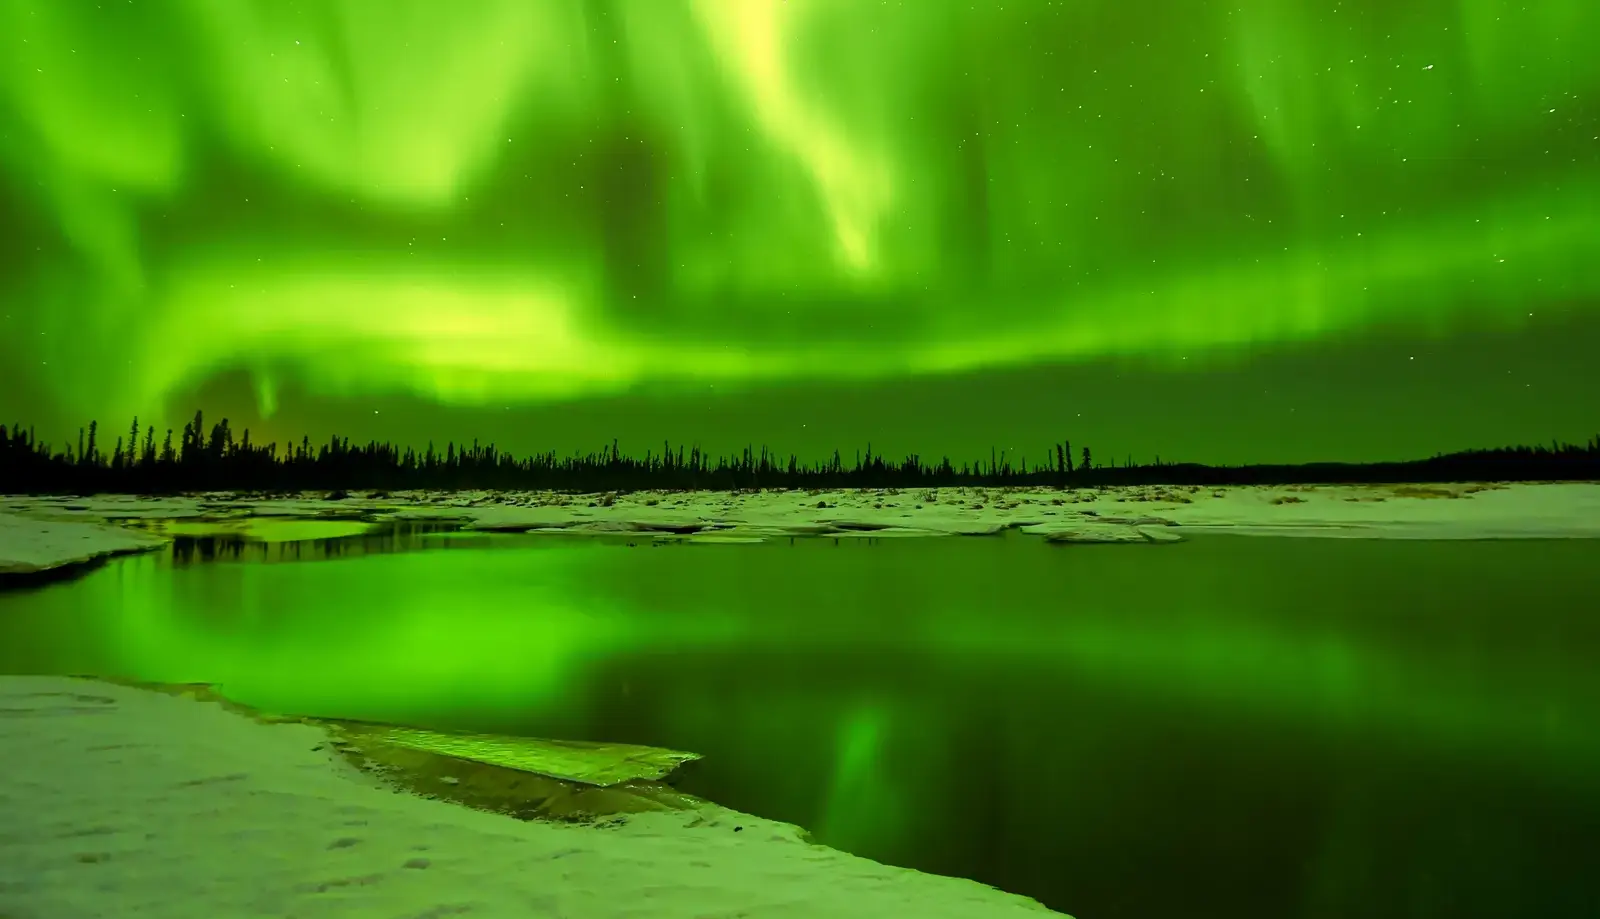 Ngắm cực quang ở Fairbanks - Trải nghiệm kỳ diệu của ánh sáng trên bầu trời đêm